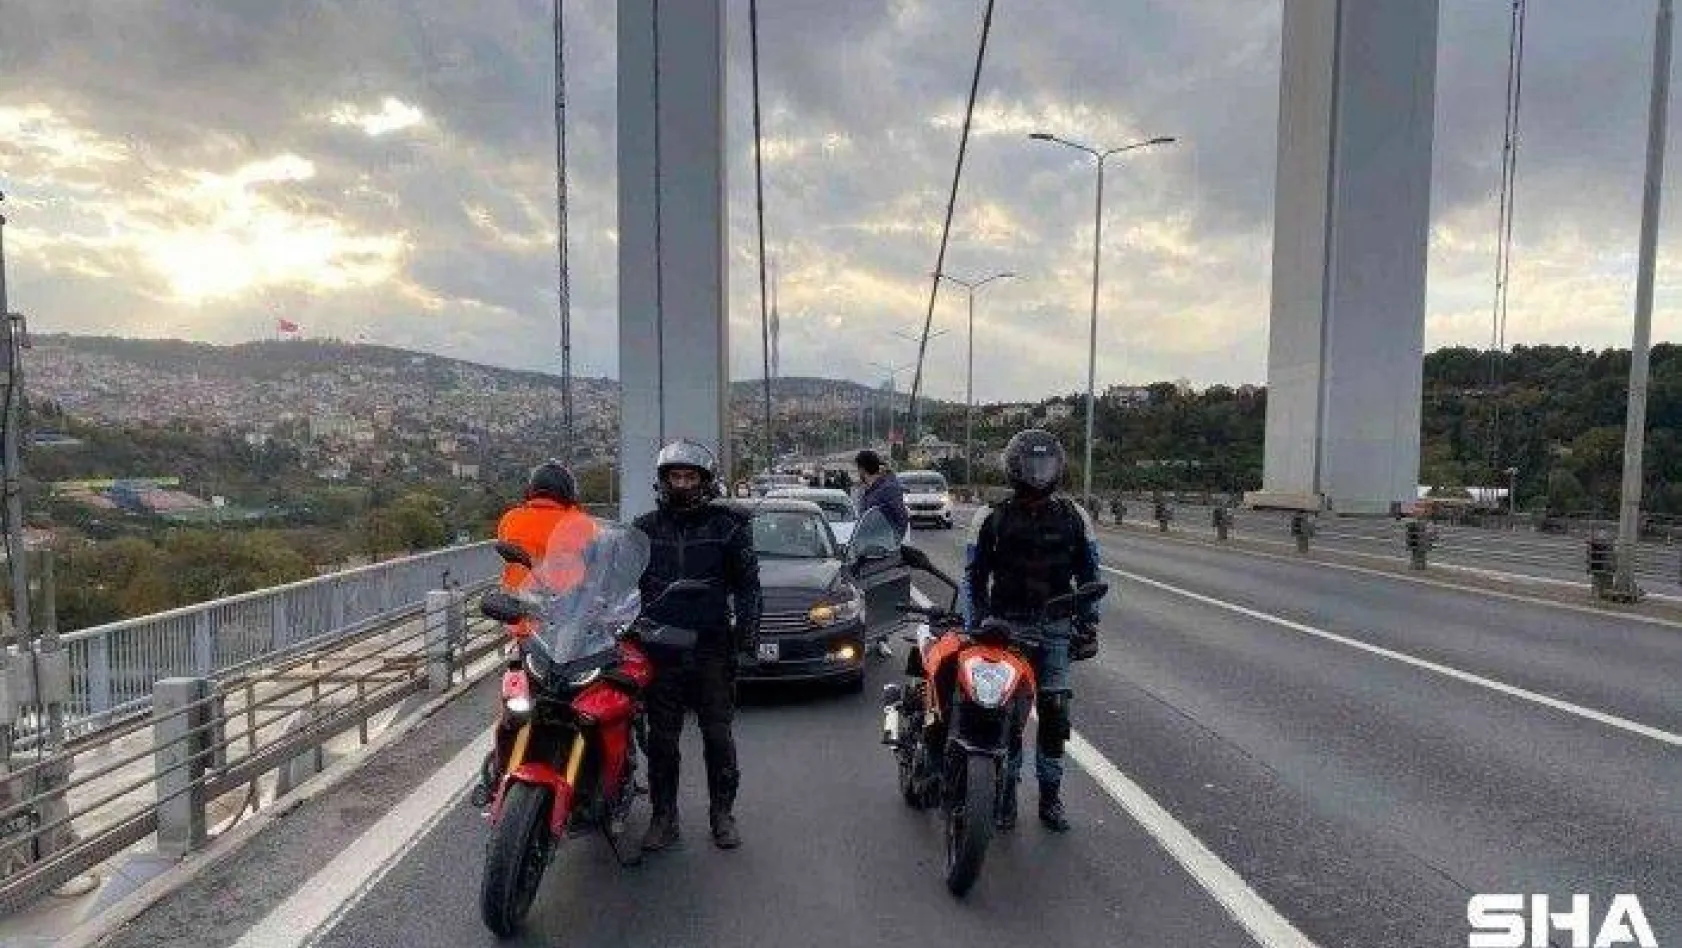 15 Temmuz Şehitler Köprüsü'nde Atatürk'e saygı duruşu